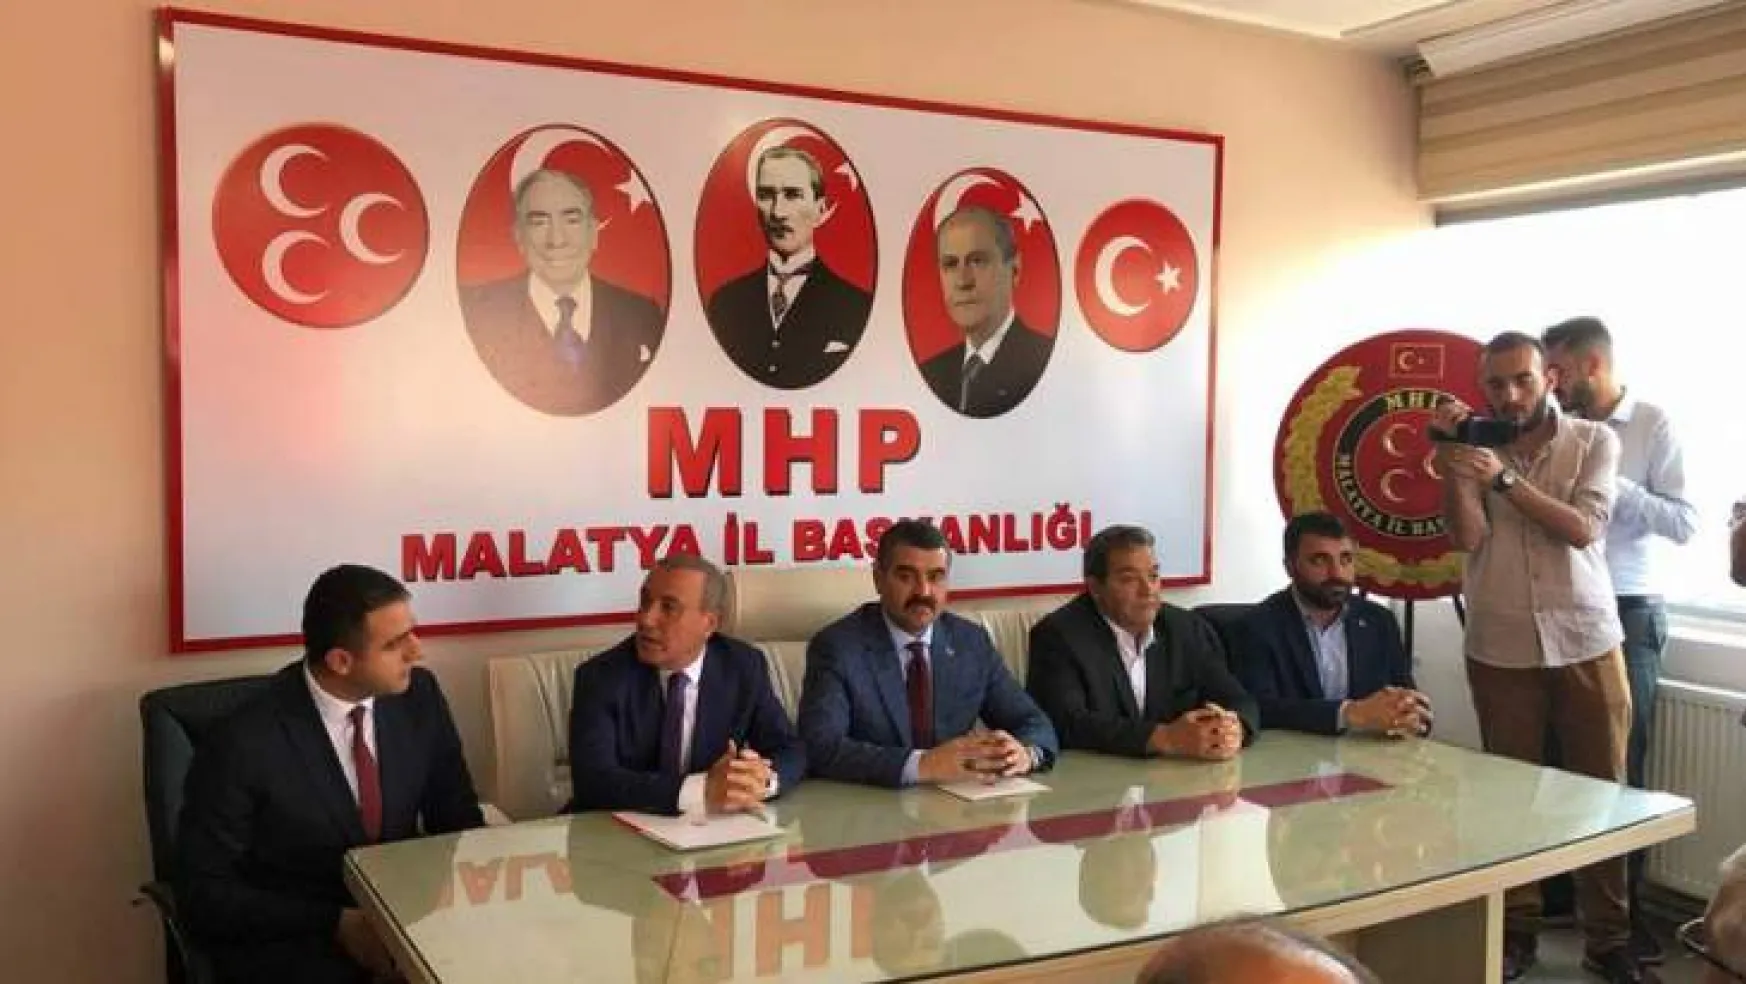 MHP Malatya'da Bayram Kutlaması